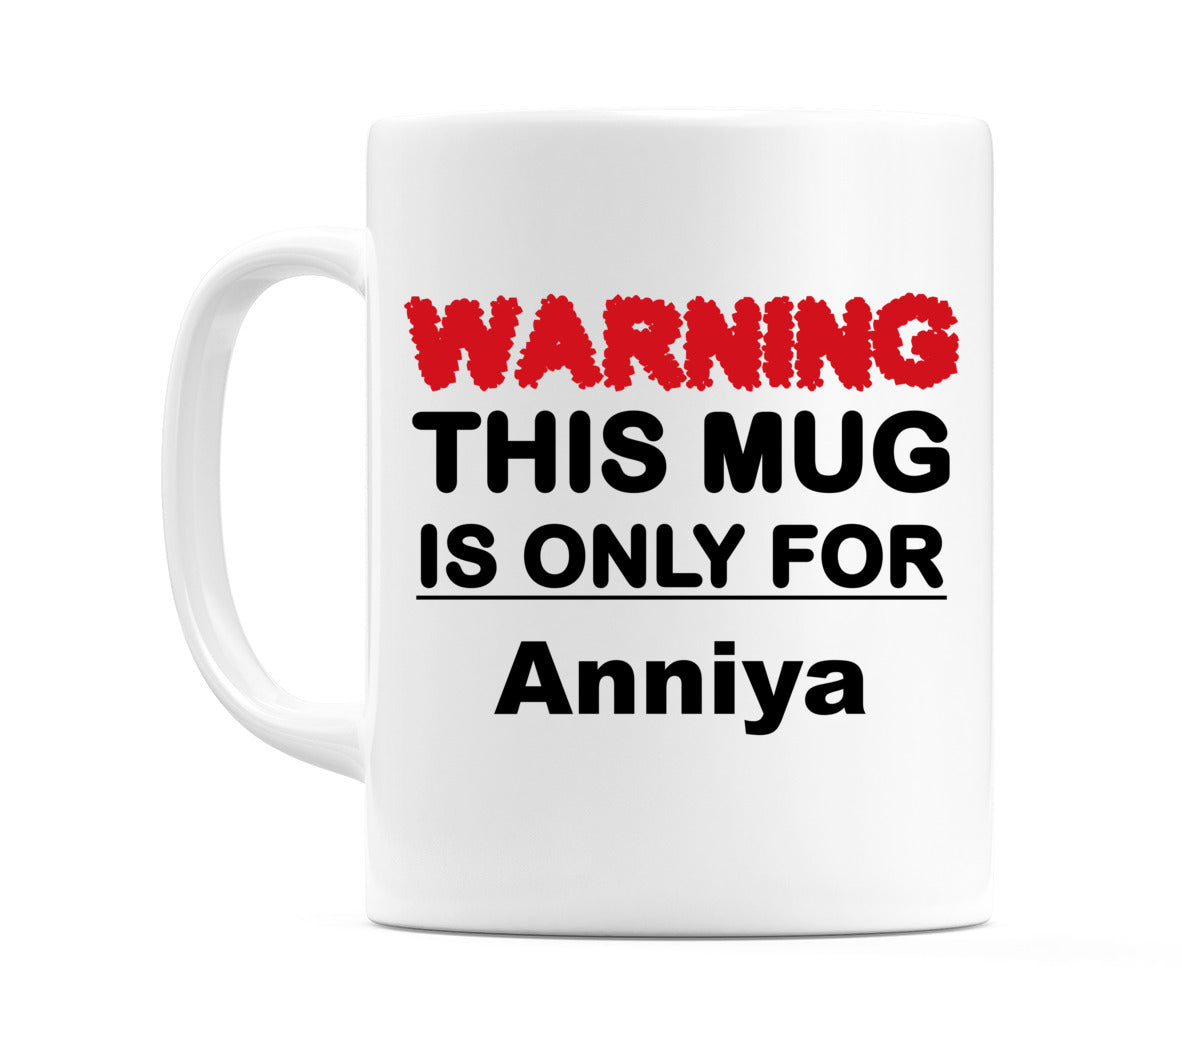 Warning This Mug is ONLY for Anniya Mug